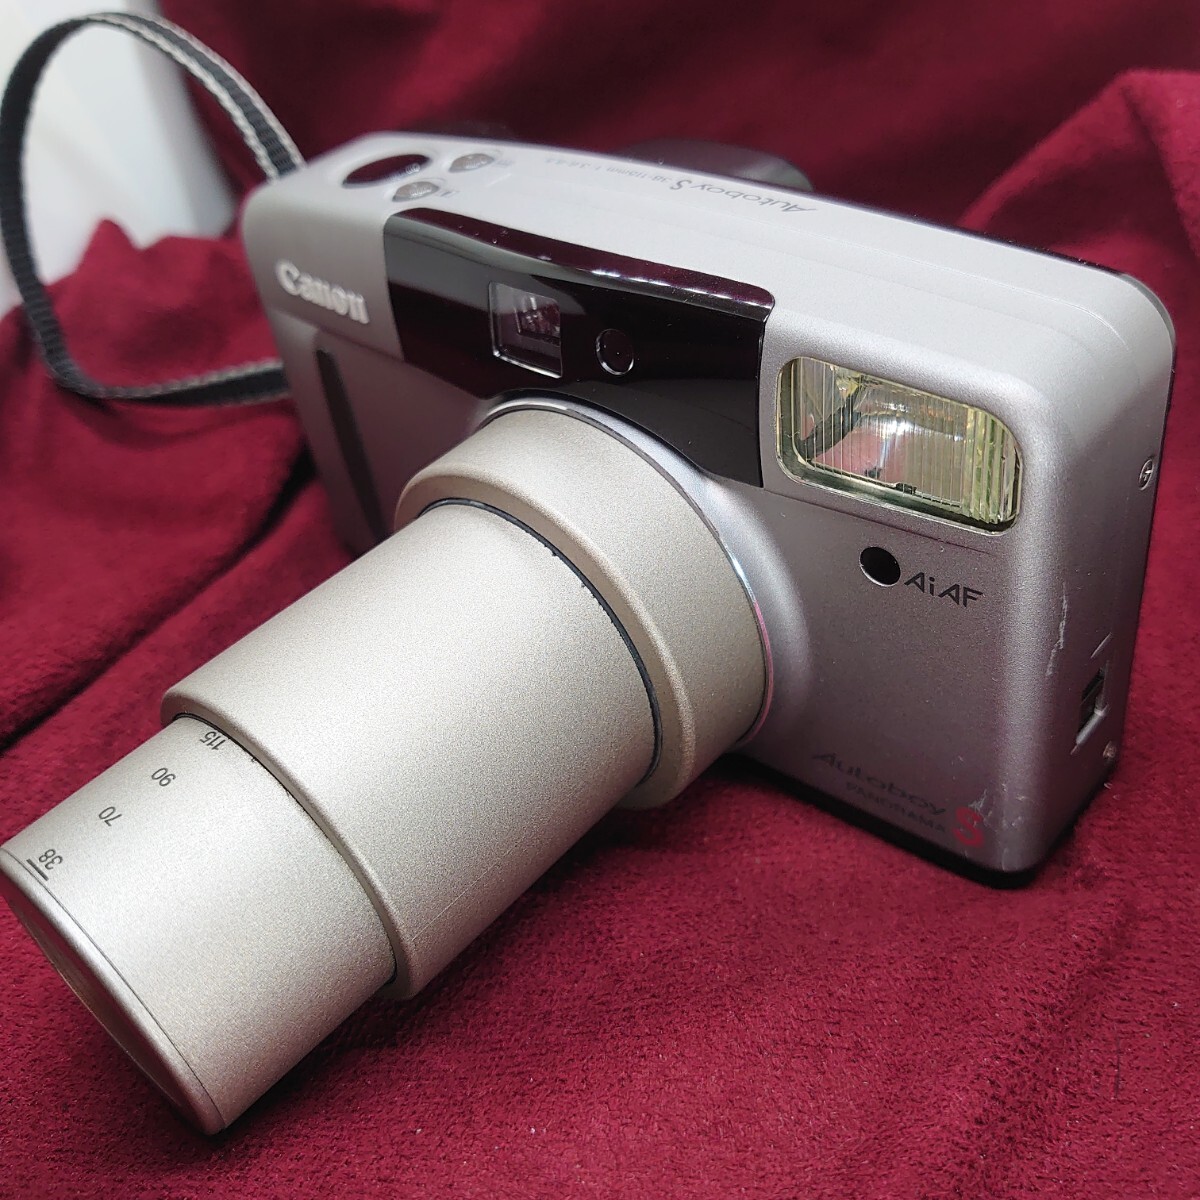 346【フラッシュ/シャッターOK】CANON Autoboy S コンパクトフィルムカメラ キヤノン オートボーイ LENS F:3.6-8.5 38-115mmの画像3